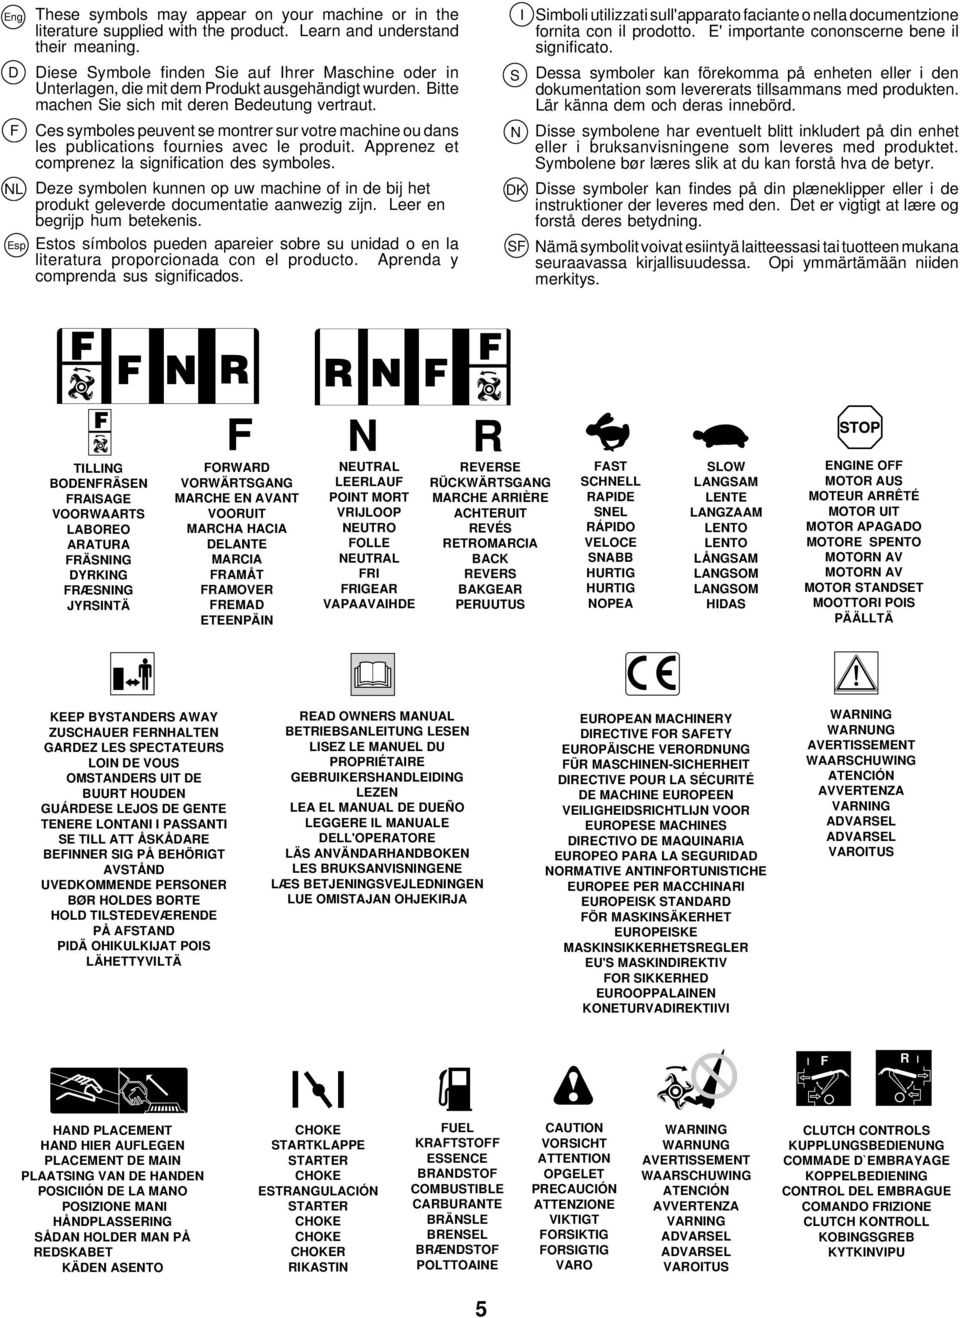 Ces symboles peuvent se montrer sur votre machine ou dans les publications fournies avec le produit. Apprenez et comprenez la signification des symboles.